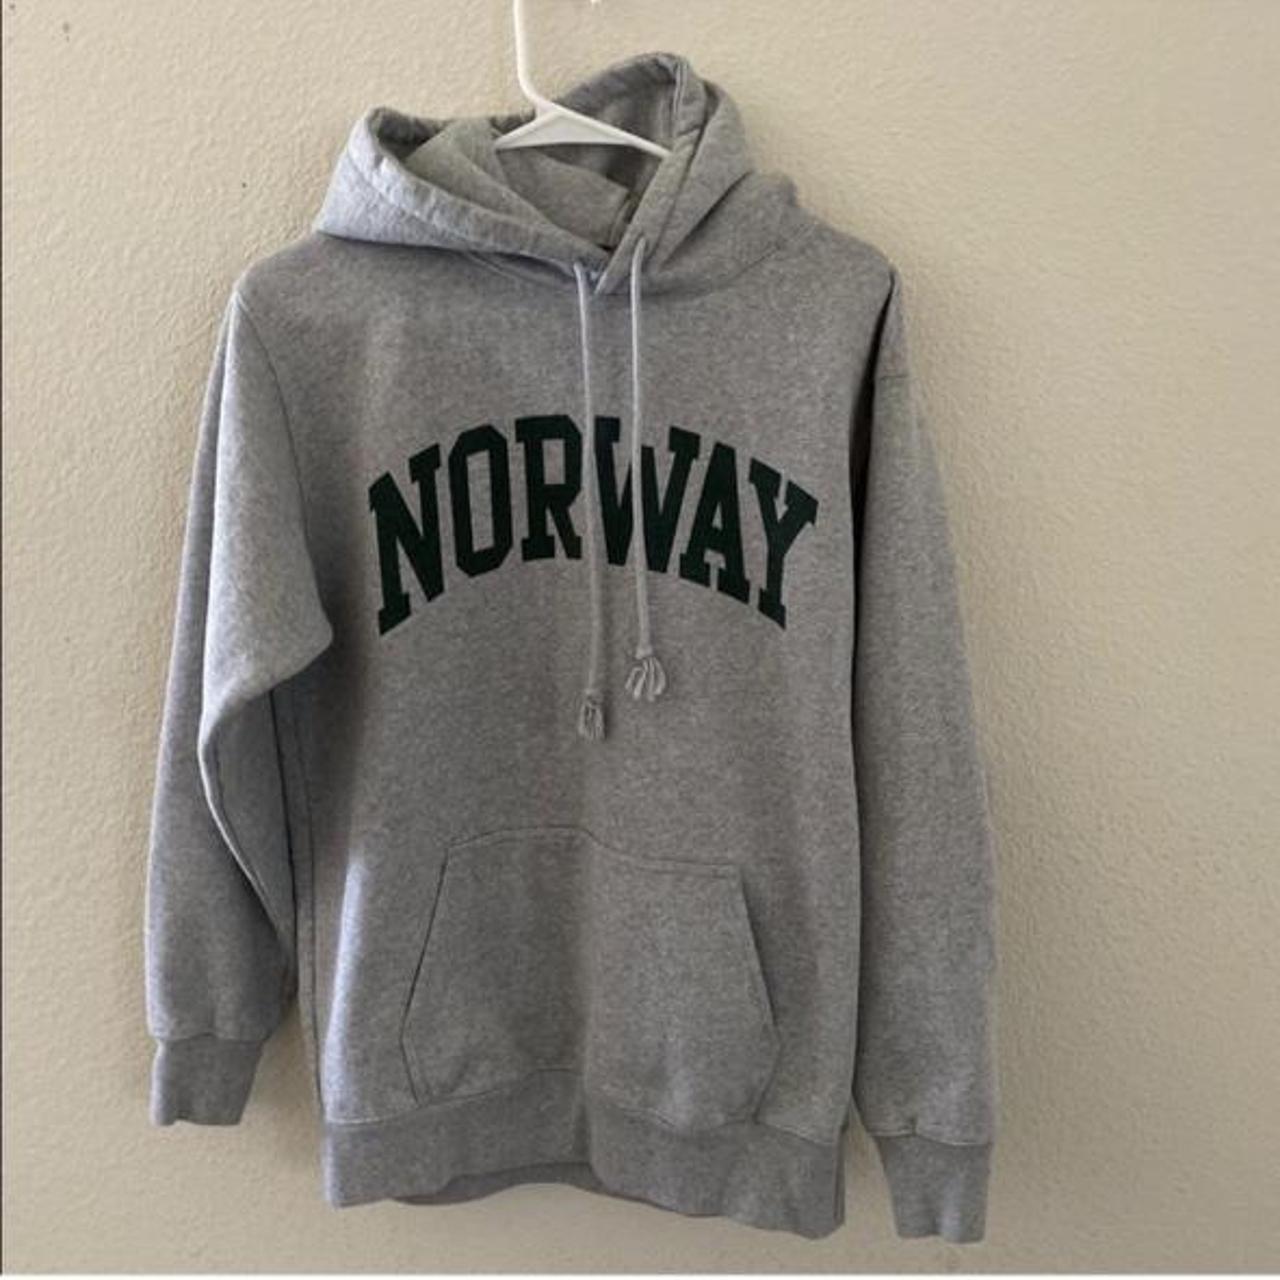 Brandy melville gray Christy Norway hoodie - Depop